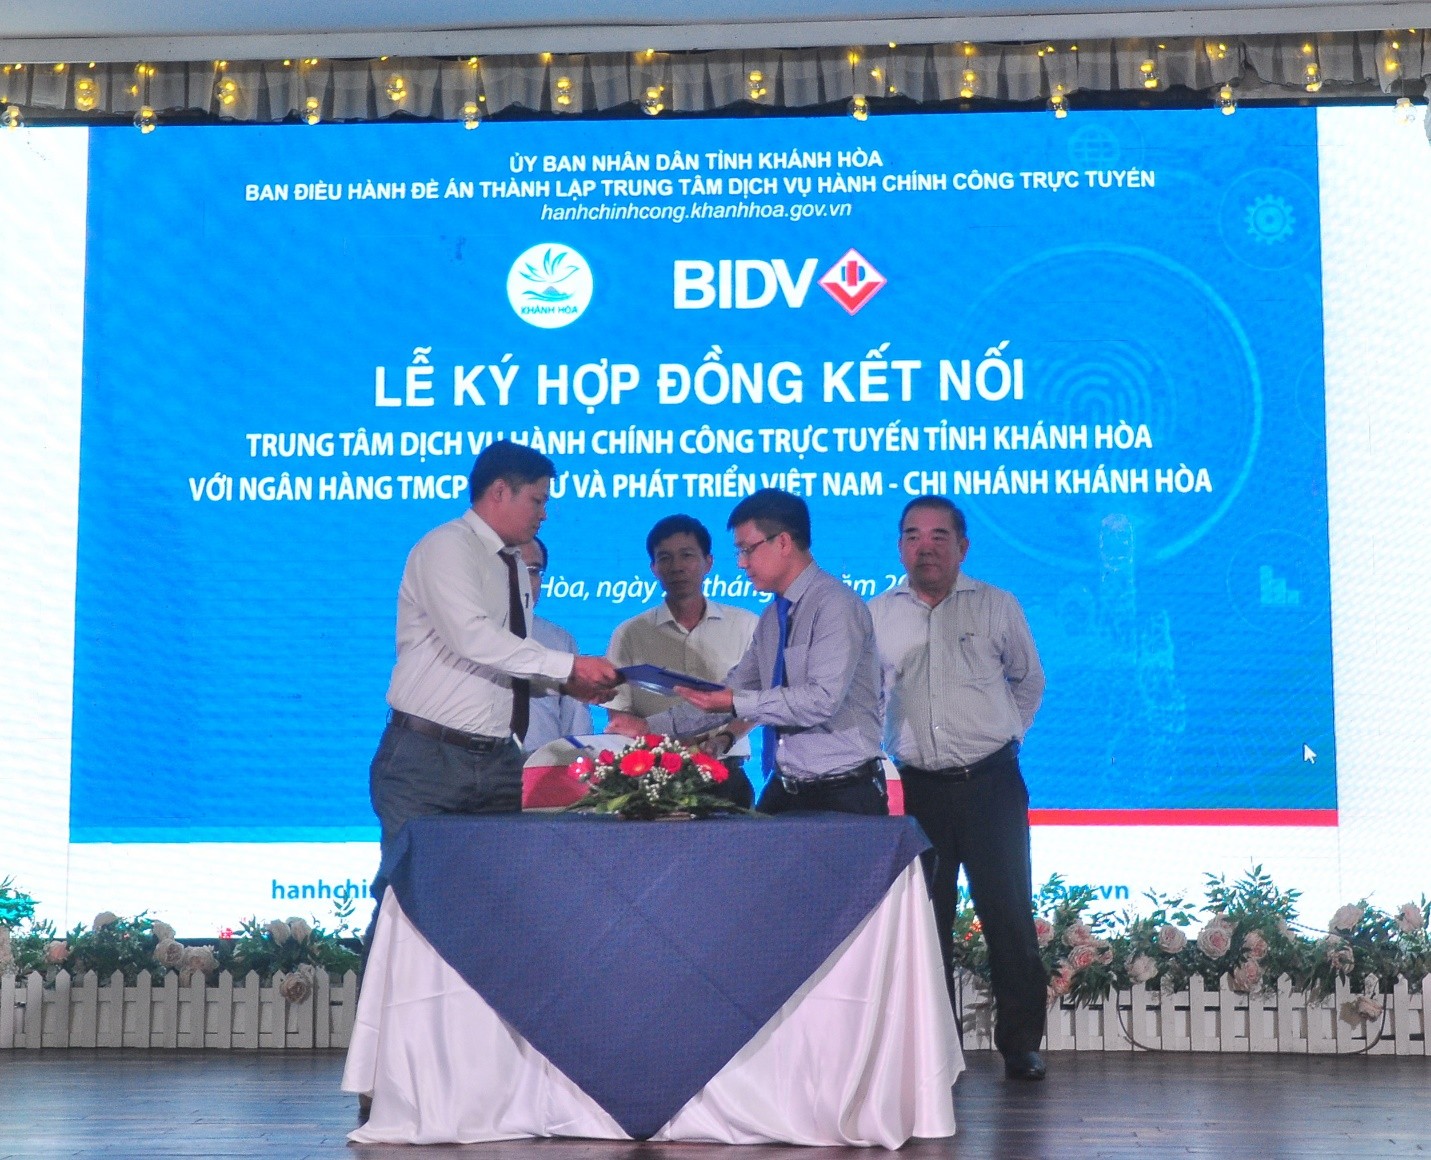 Trung Tâm Dịch Vụ Hành Chính Công Trực Tuyến Tỉnh Khánh Hòa và BIDV Khánh Hòa ký kết Hợp đồng